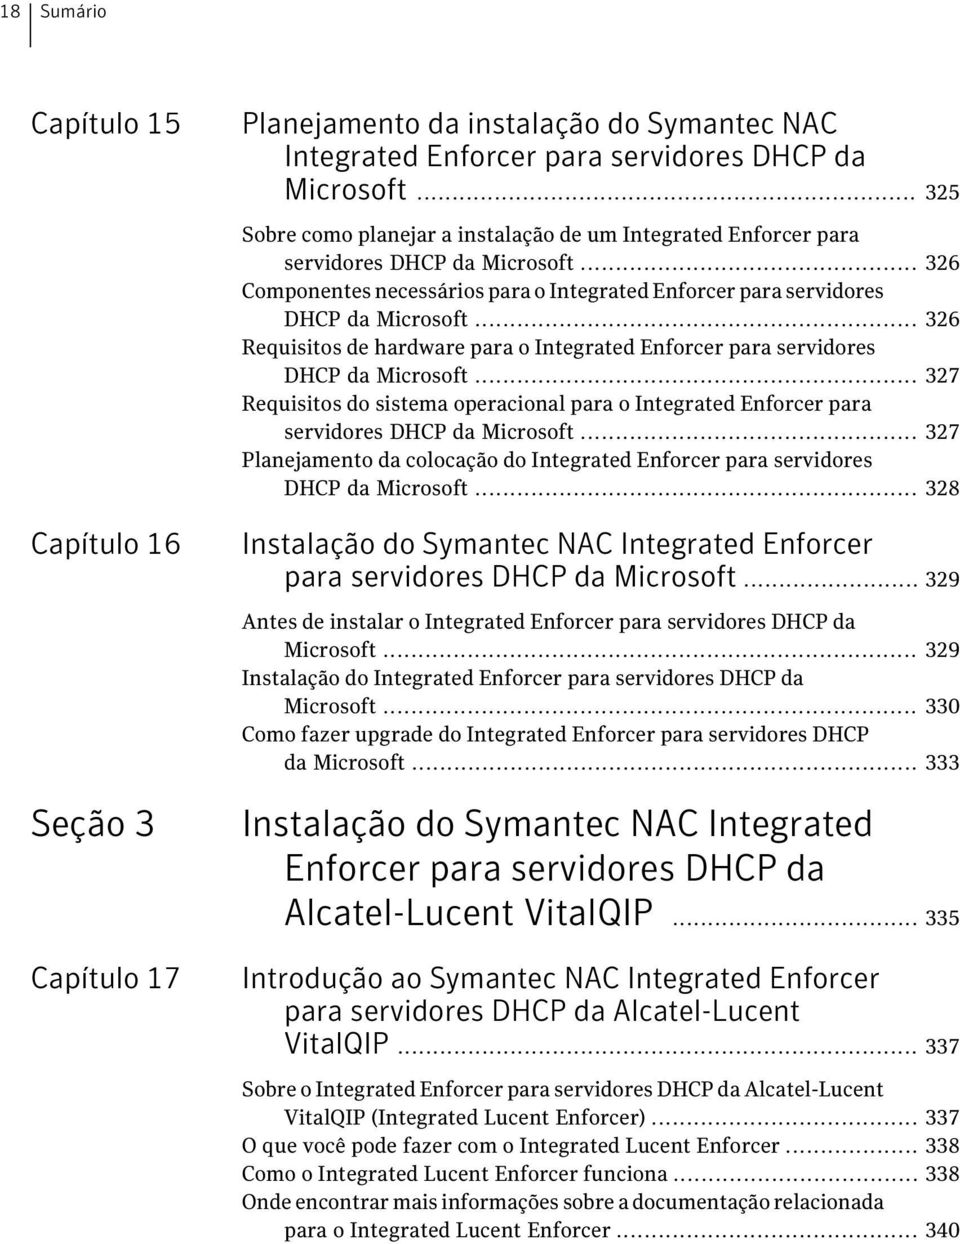 .. 326 Requisitos de hardware para o Integrated Enforcer para servidores DHCP da Microsoft... 327 Requisitos do sistema operacional para o Integrated Enforcer para servidores DHCP da Microsoft.